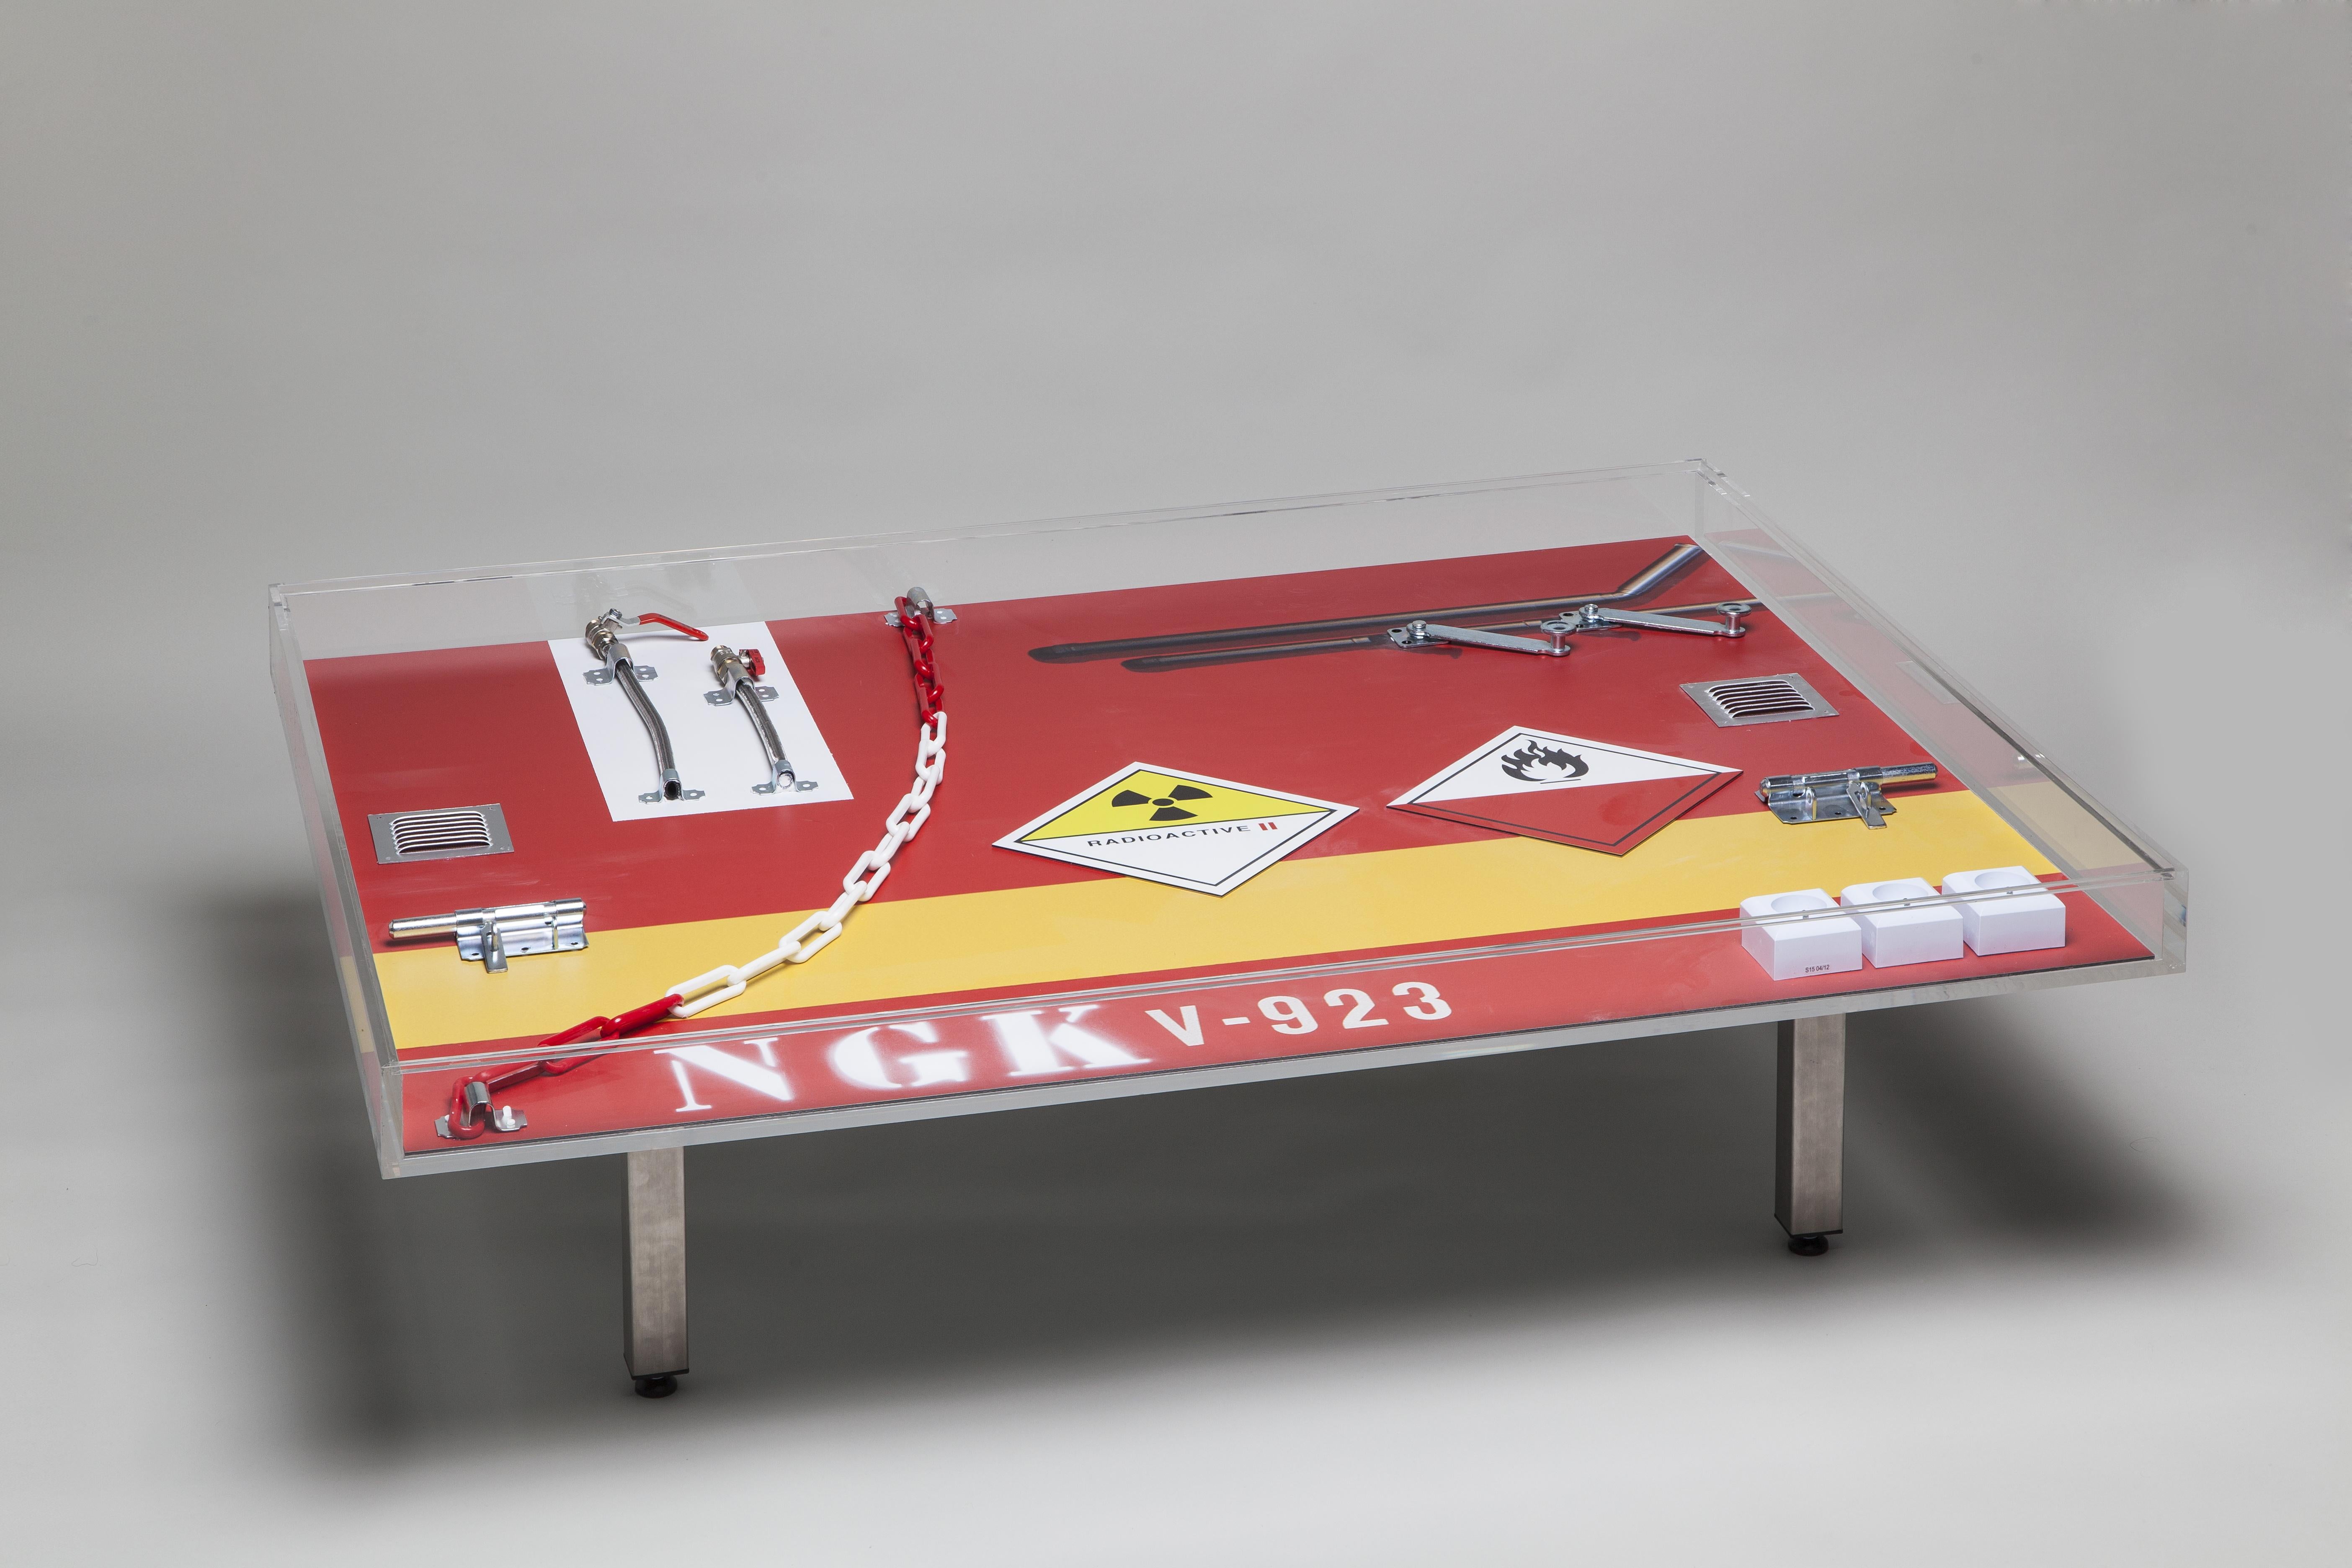 Table basse NGK de Peter Klasen Table de conception d'artiste en plexiglas imprimé rouge